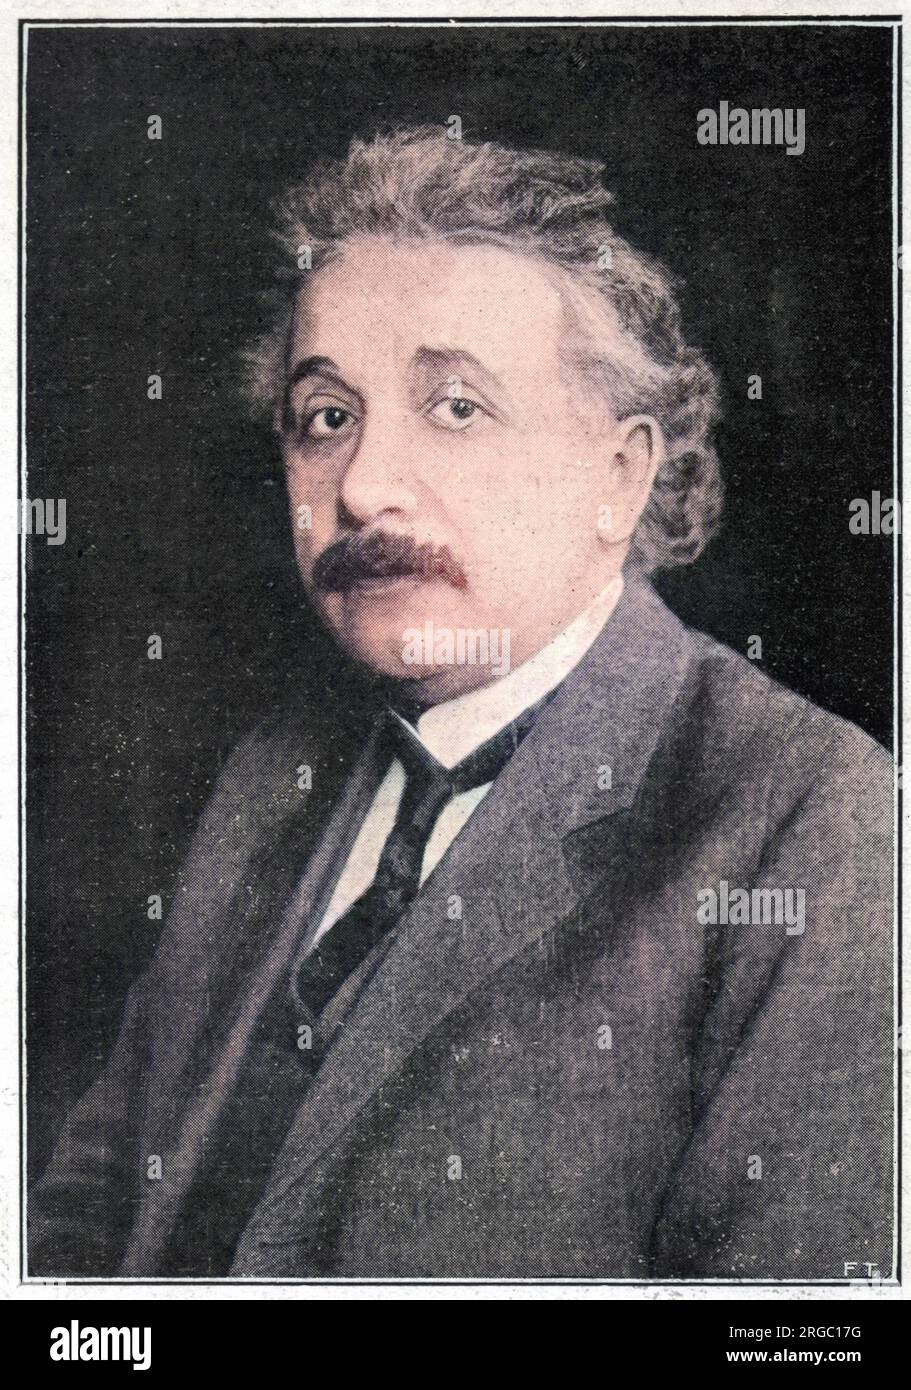 ALBERT EINSTEIN (1879-1955), deutscher Physiker. Nobelpreis für Physik. Stockfoto